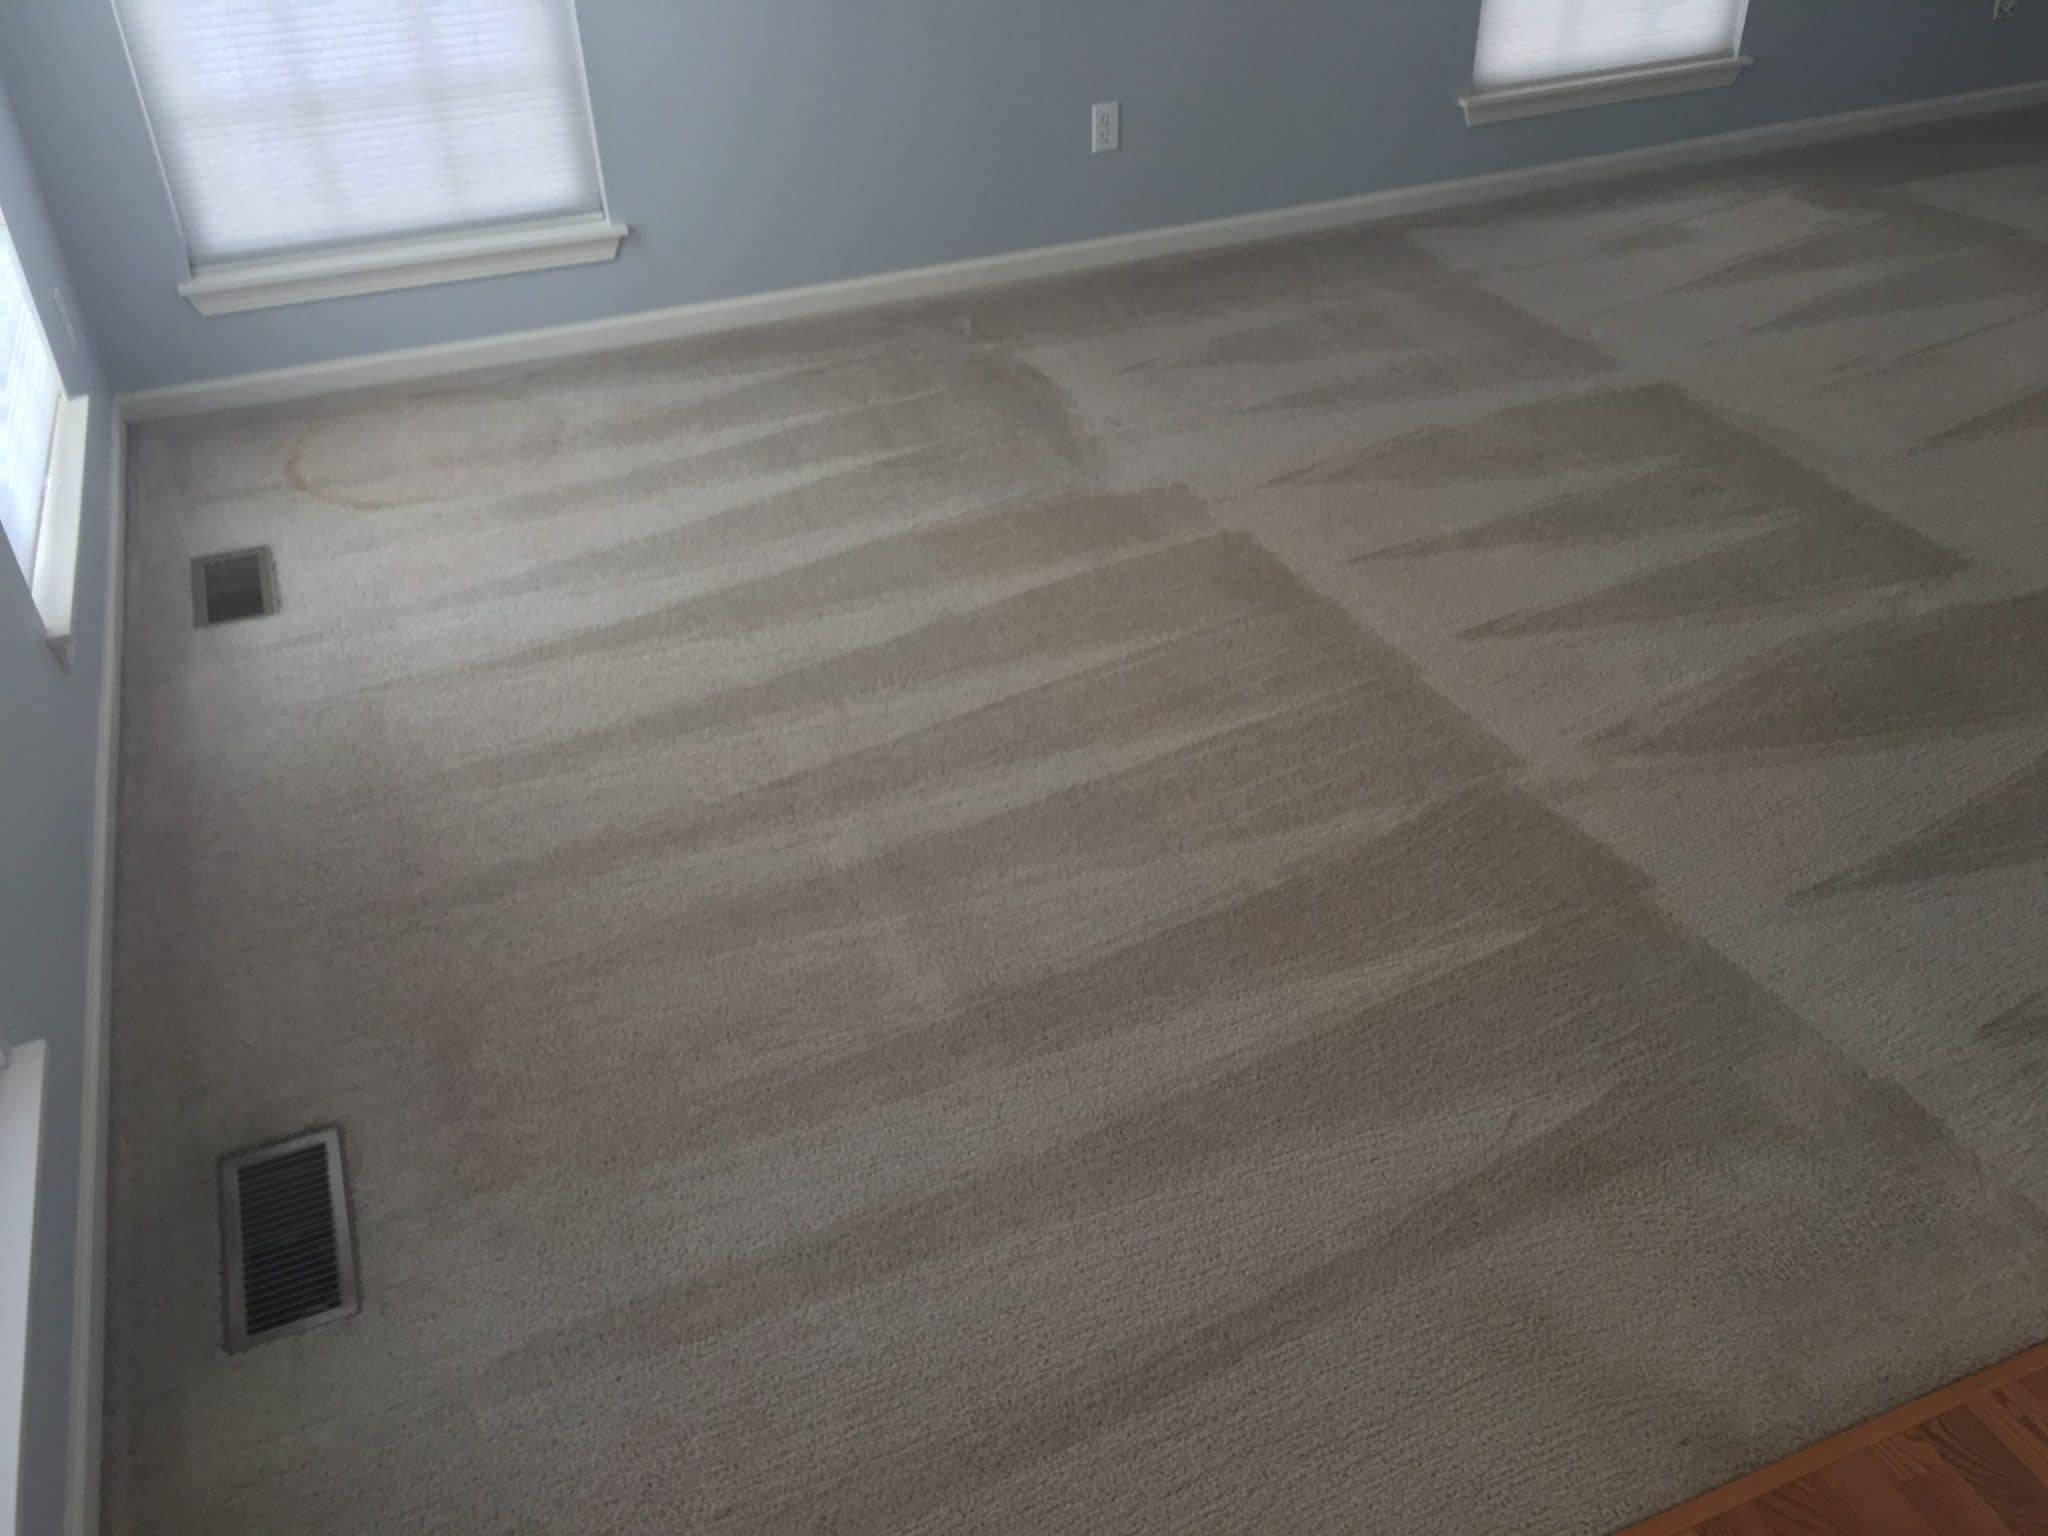 Carpet Cleaning in Kenosha, Kenosha Carpet Cleaner, The Dry Guys carpet cleaner